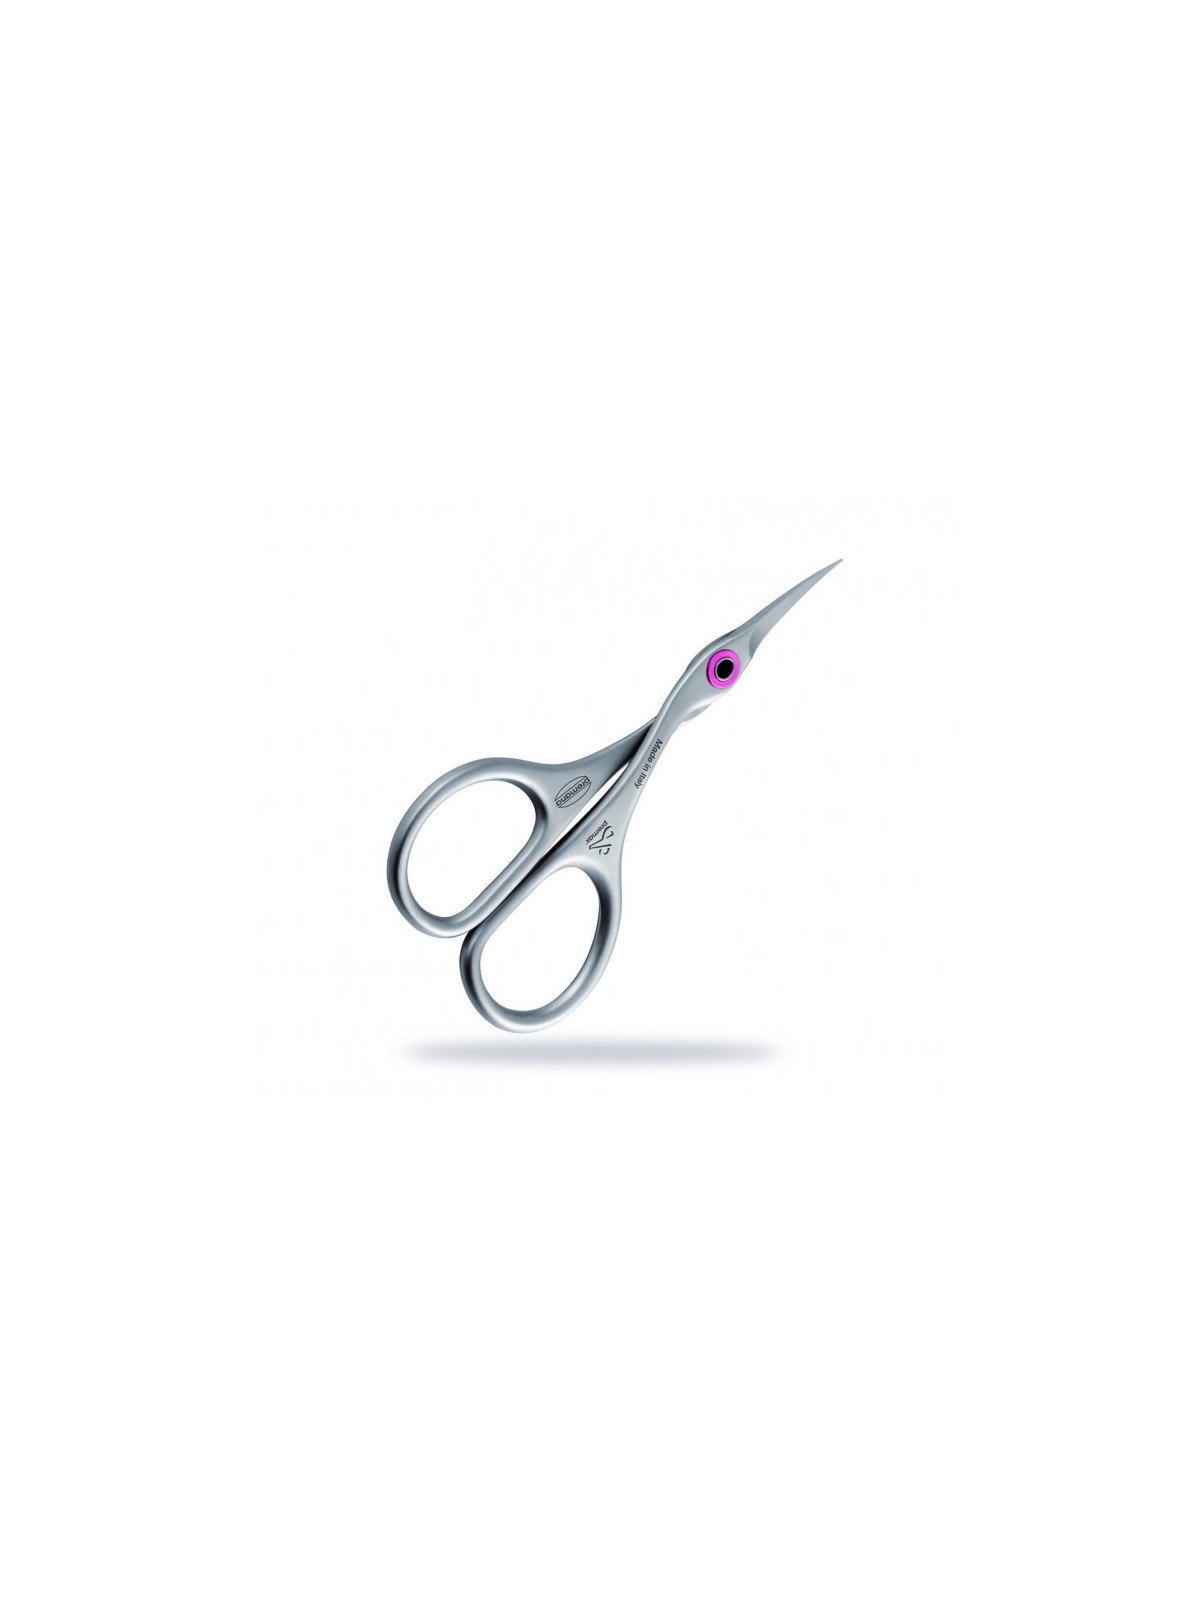 Premax Ring Lock Cuticle Scissors